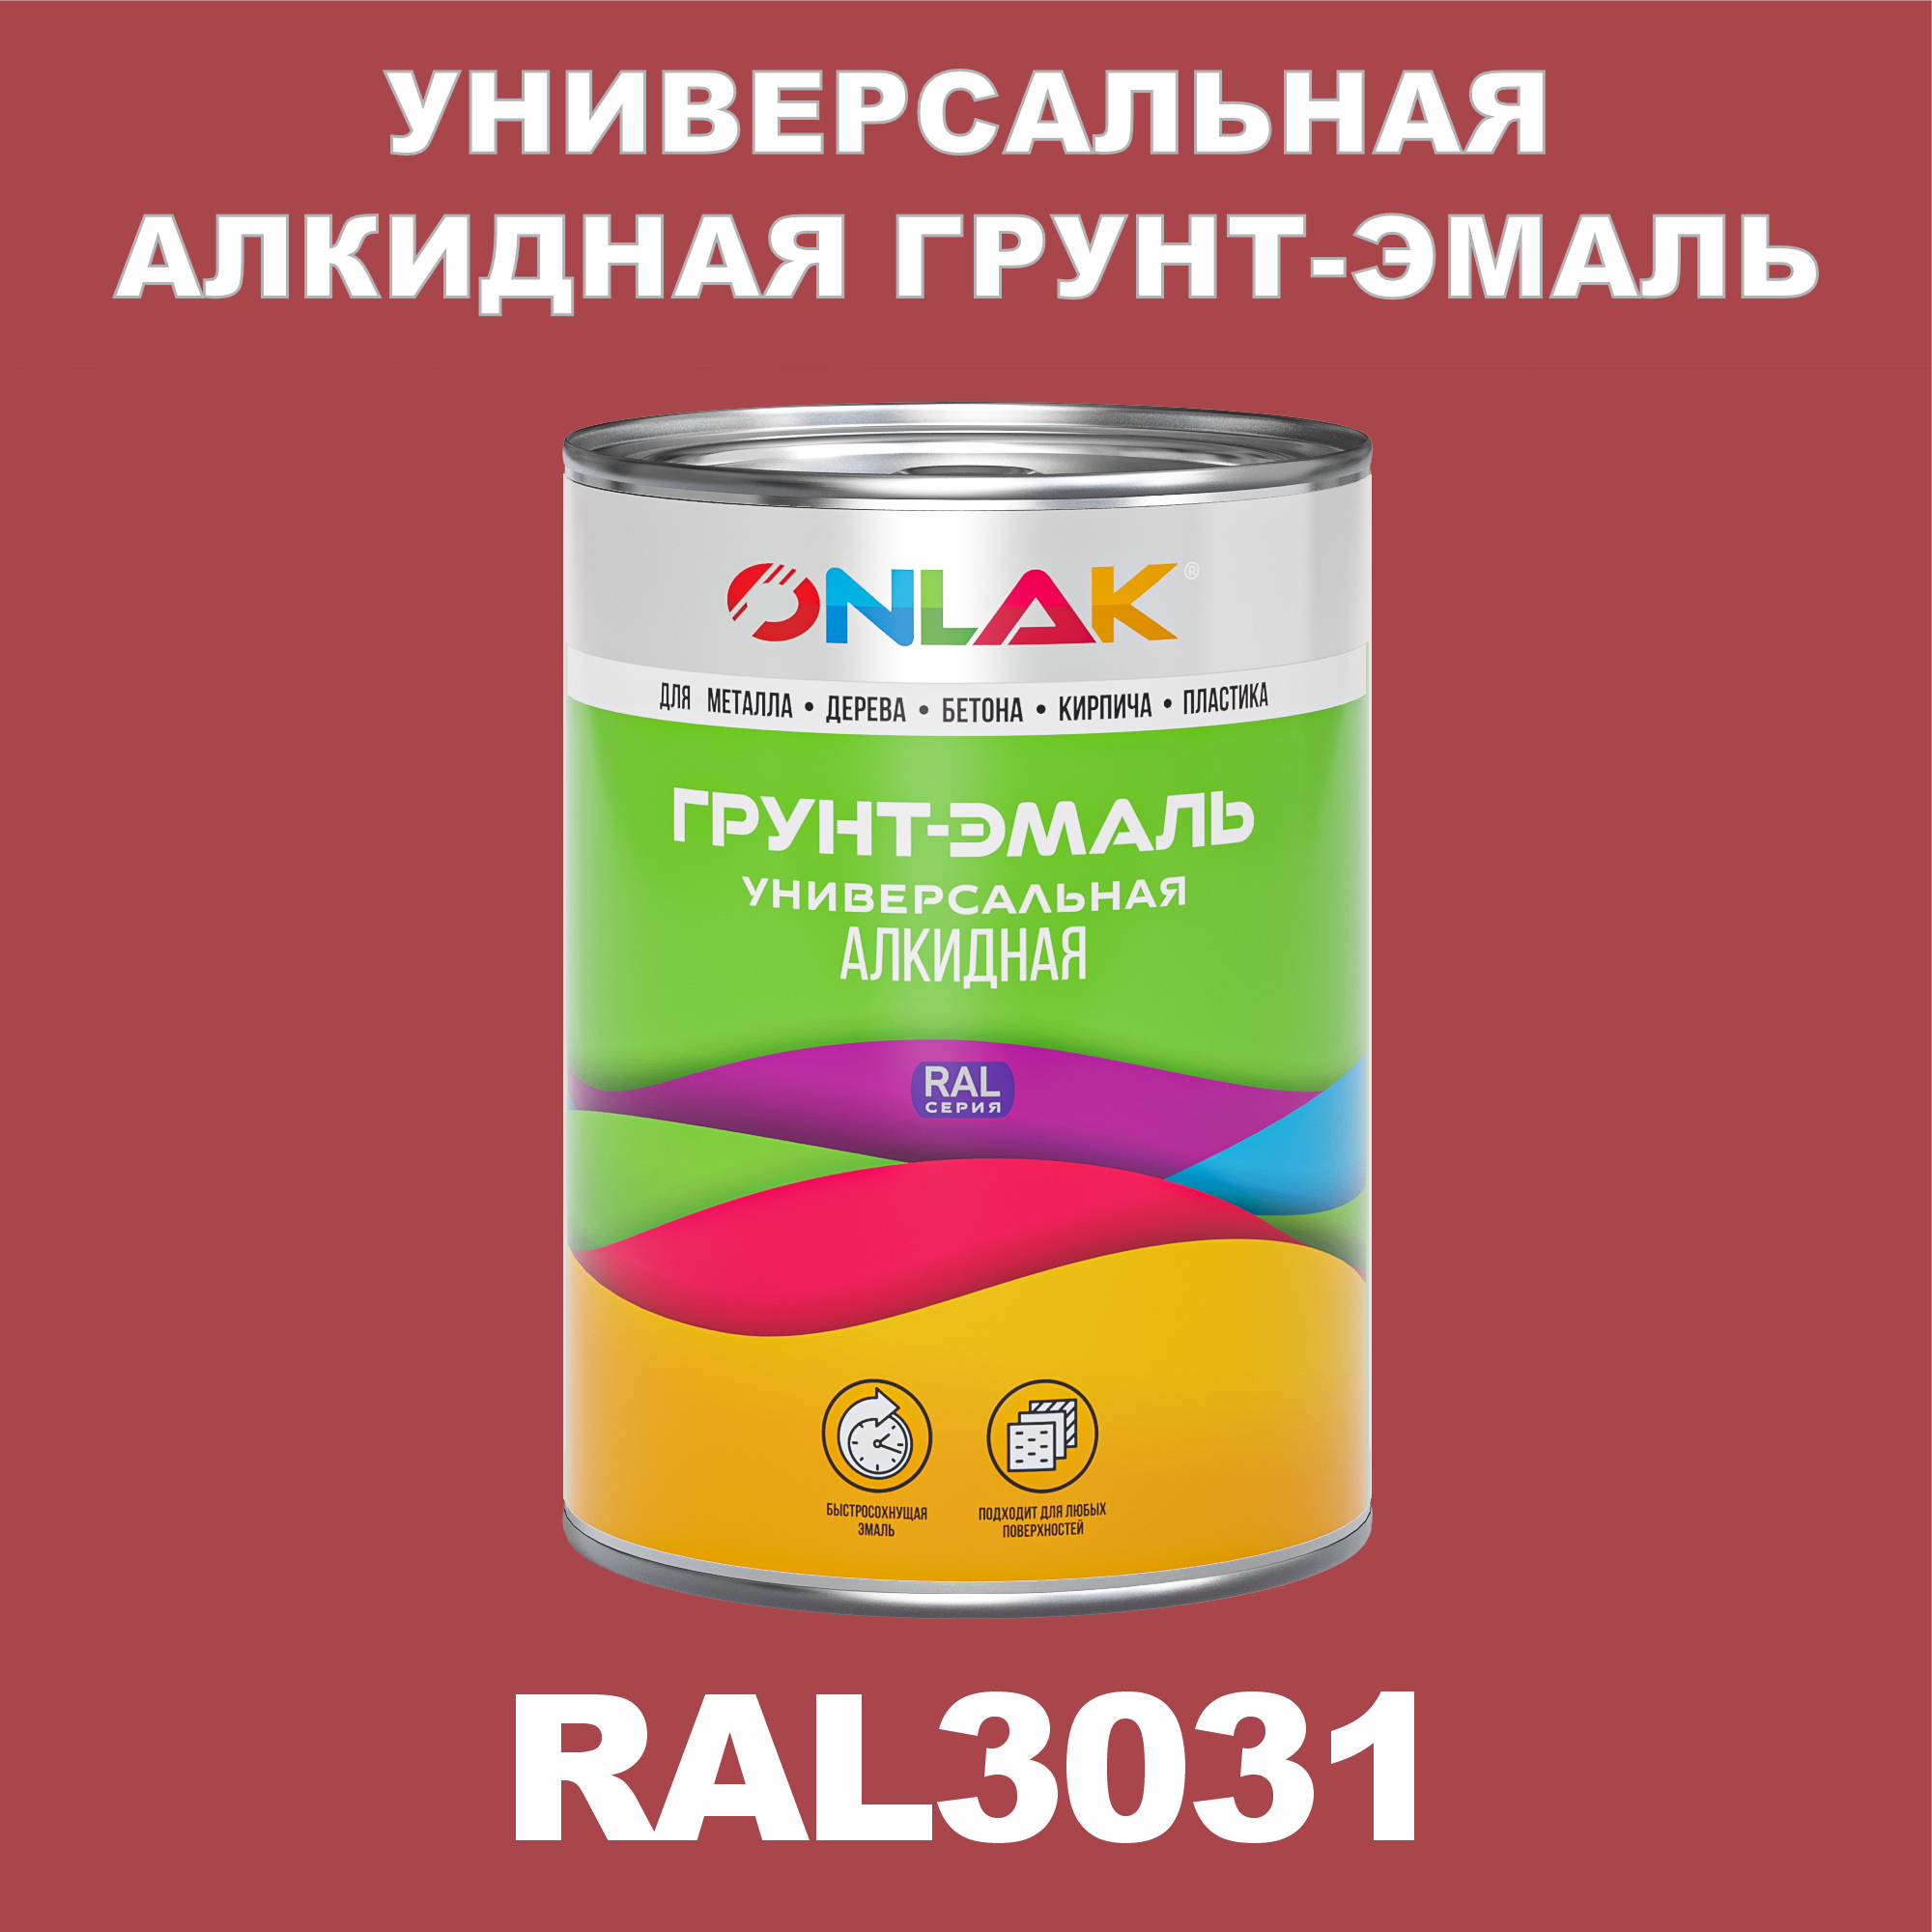 Грунт-эмаль ONLAK 1К RAL3031 антикоррозионная алкидная по металлу по ржавчине 1 кг алкидная эмаль грунт paritet